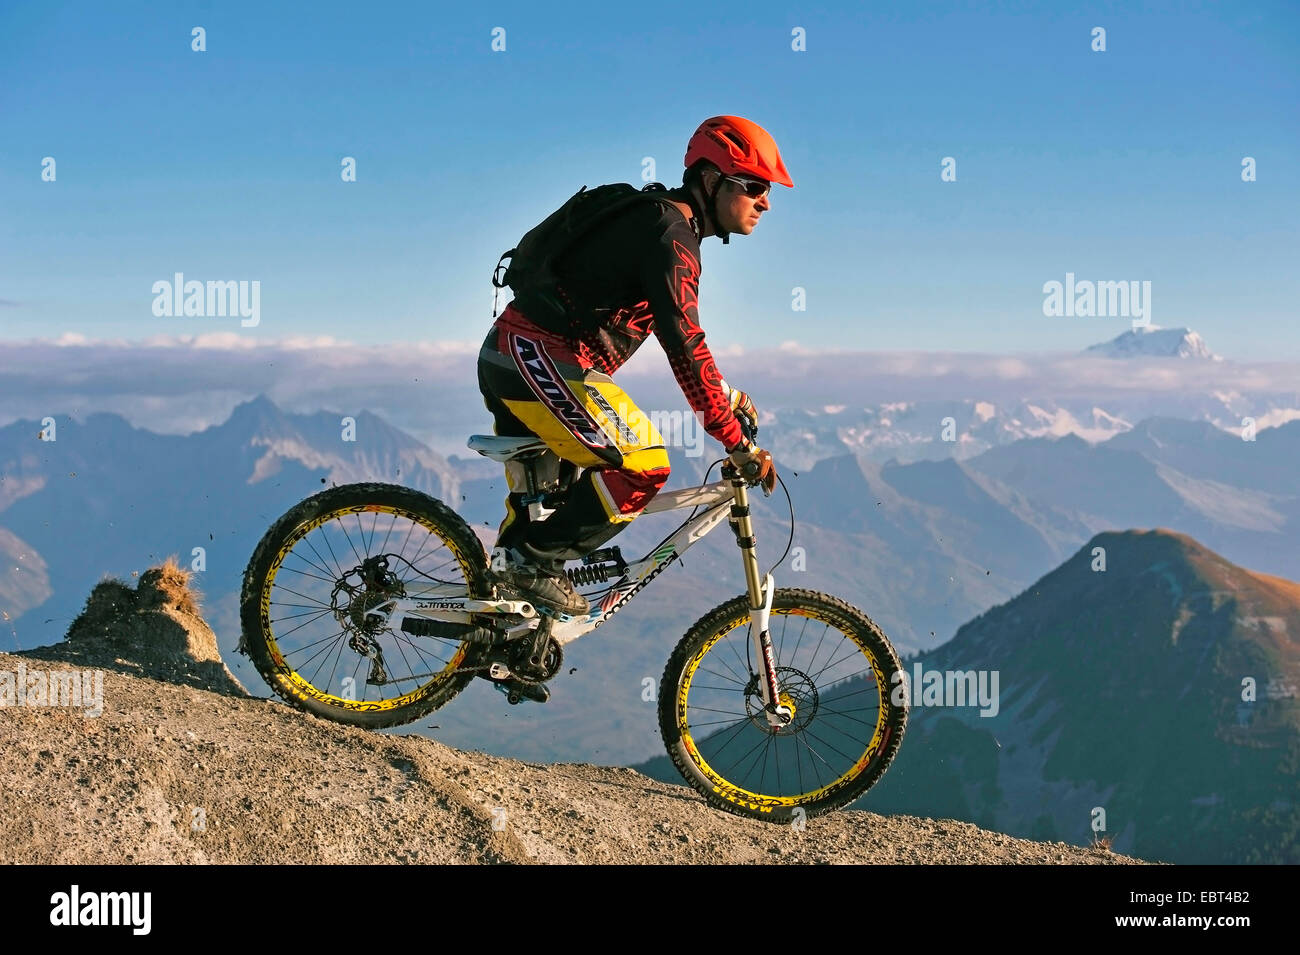 Mountainbiker circonscription vers le bas d'une montagne, le Mont Blanc en arrière-plan, France, Savoie Banque D'Images